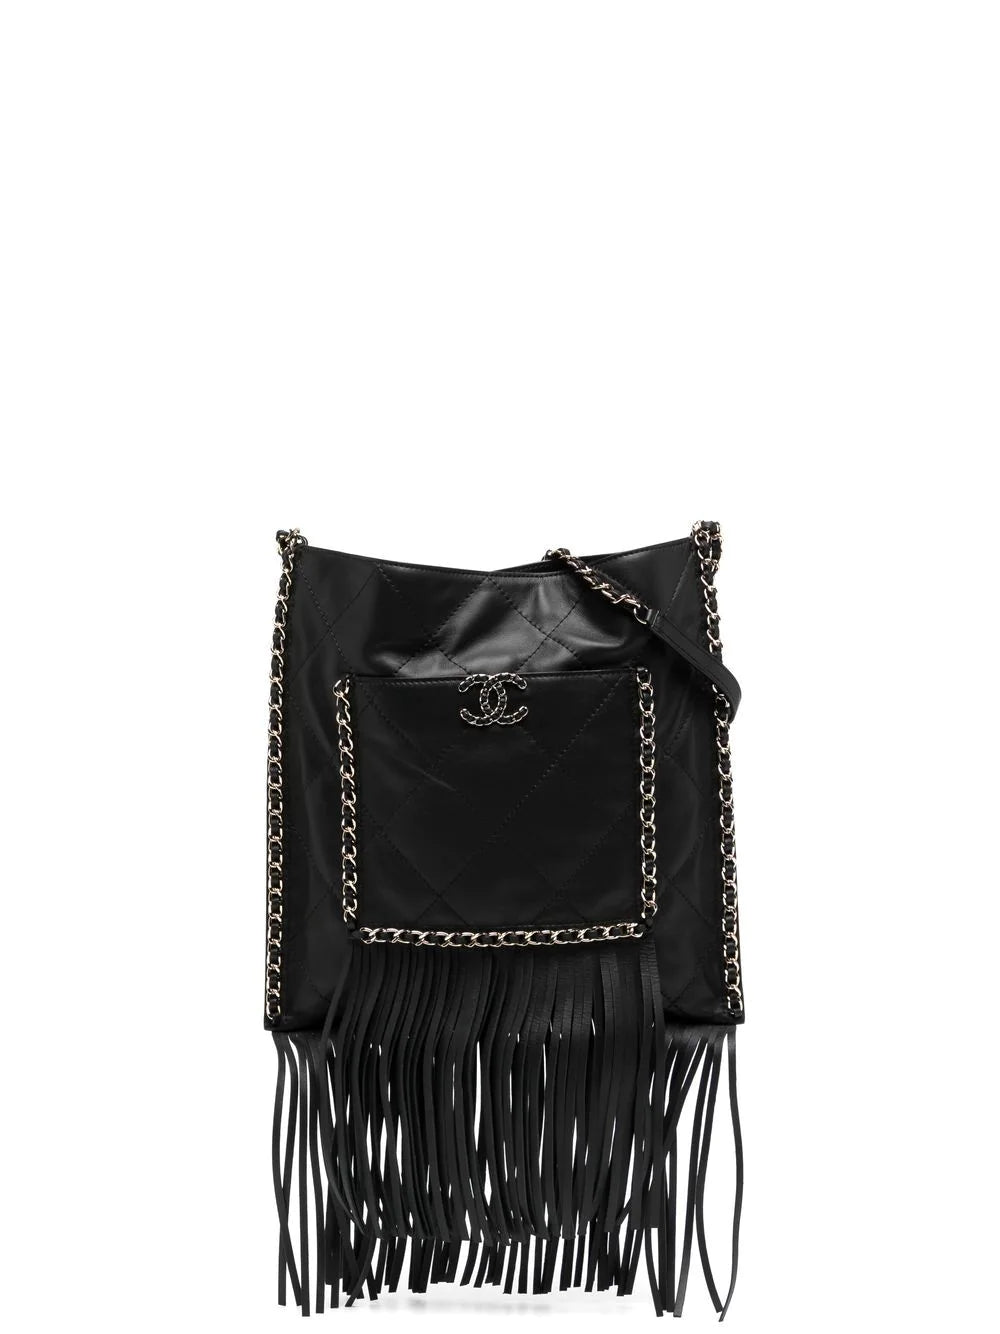 Black Leather Fringe Shopping Bag